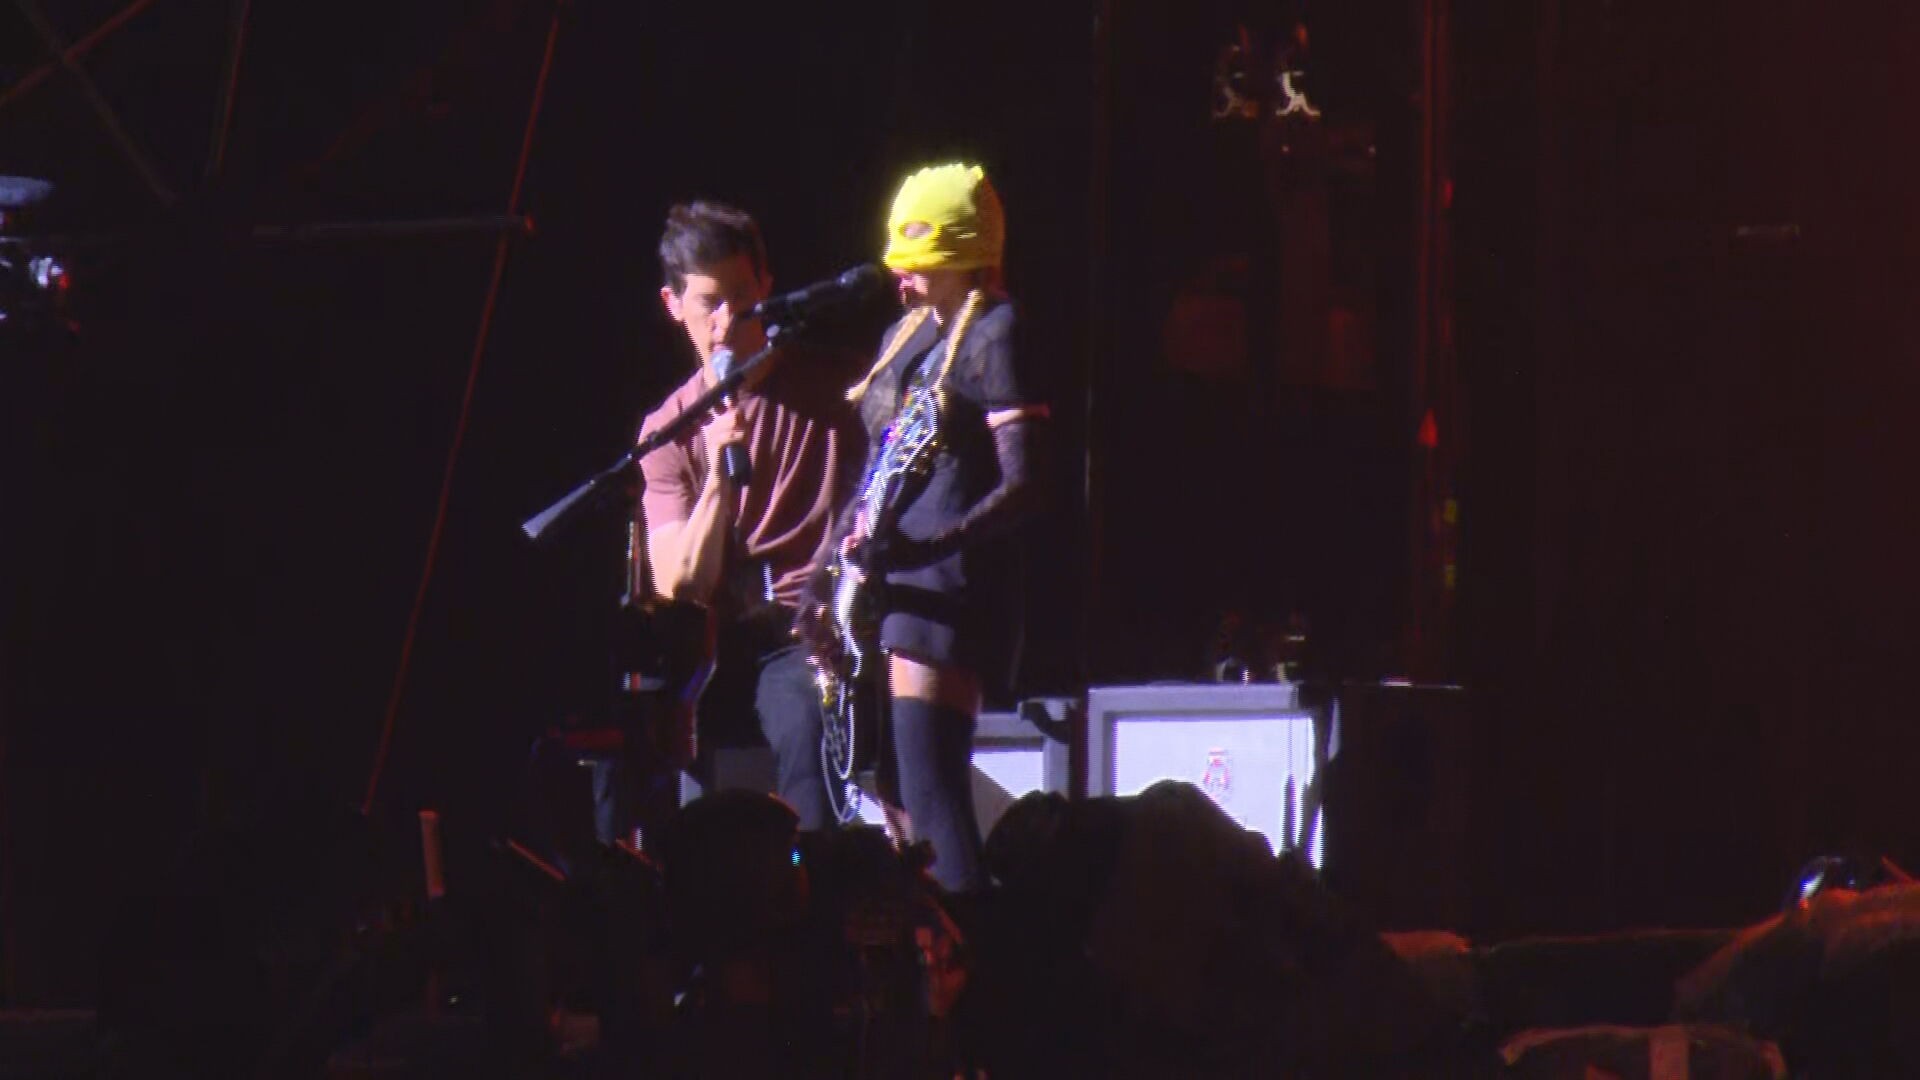 Mascarada, Madonna sobe ao palco e canta em ensaio no palco de show em Copacabana